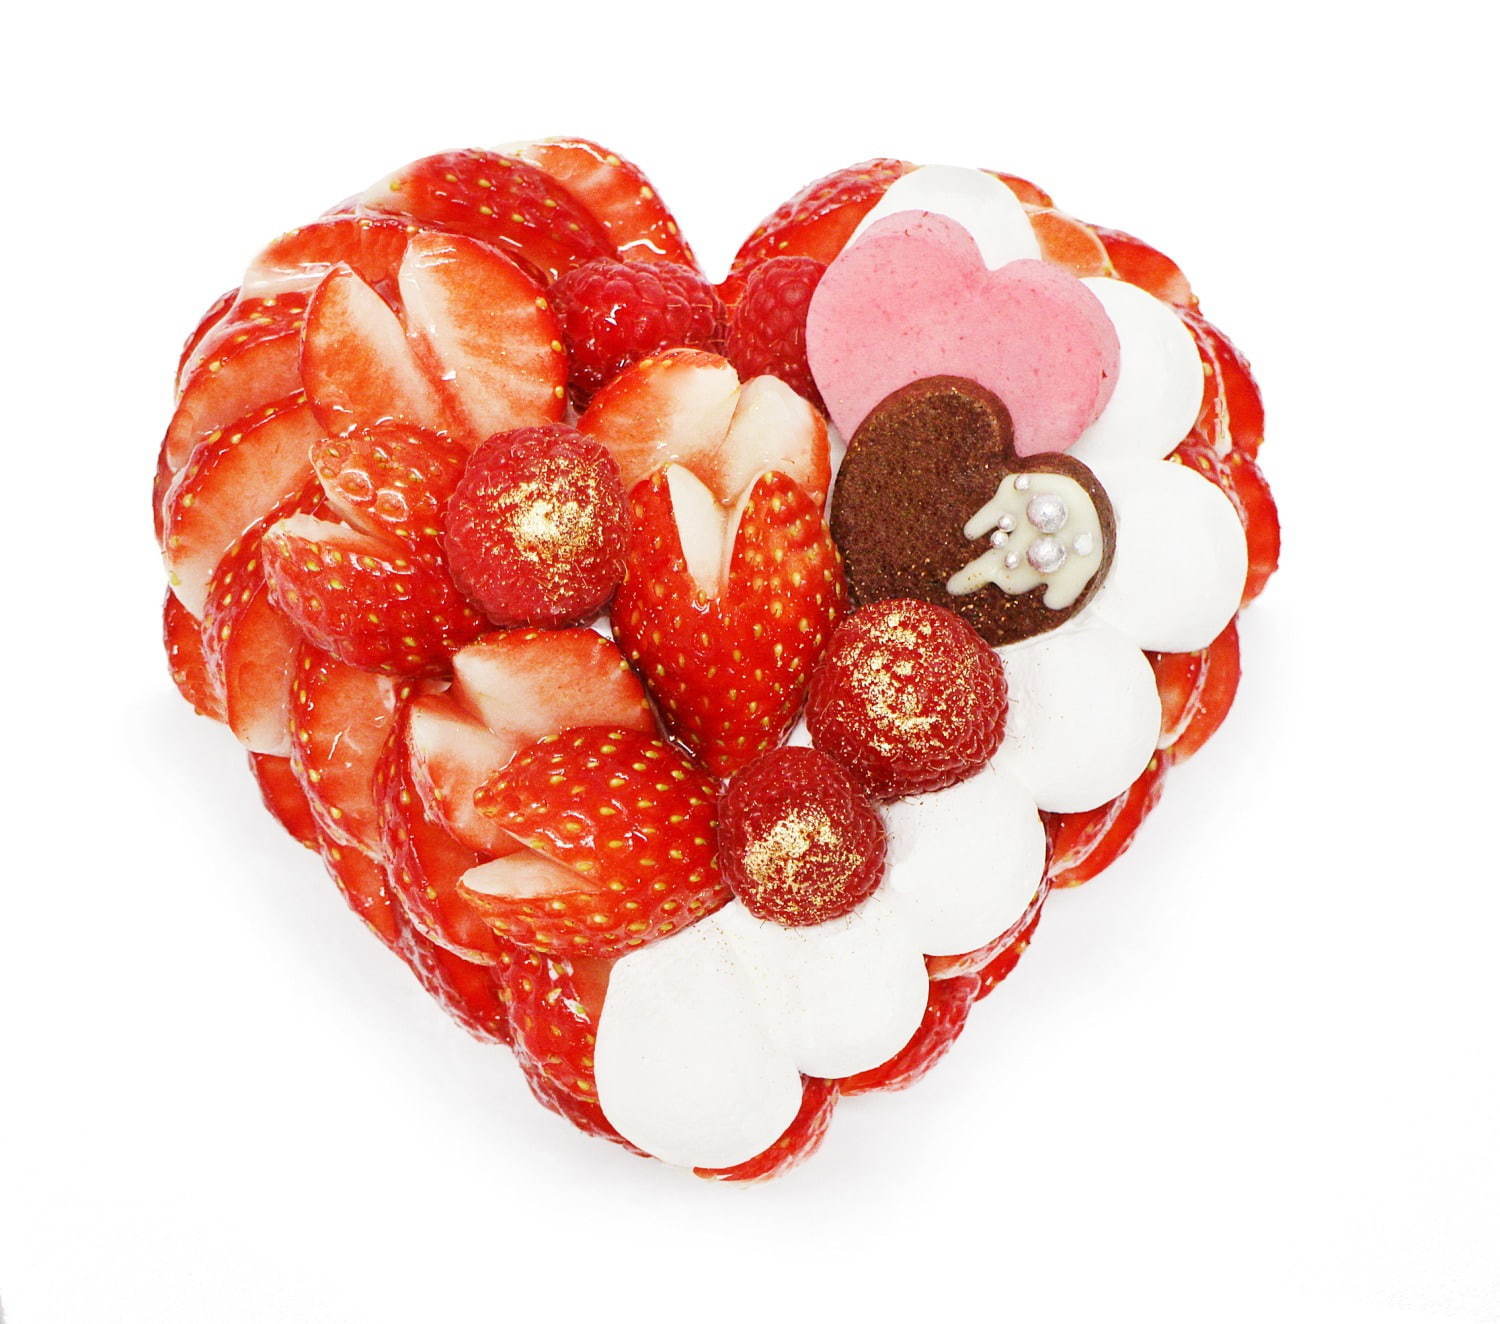 「恋みのり」いちごとラズベリームースのチョコケーキ(直径12cm) 3,700円(税込)